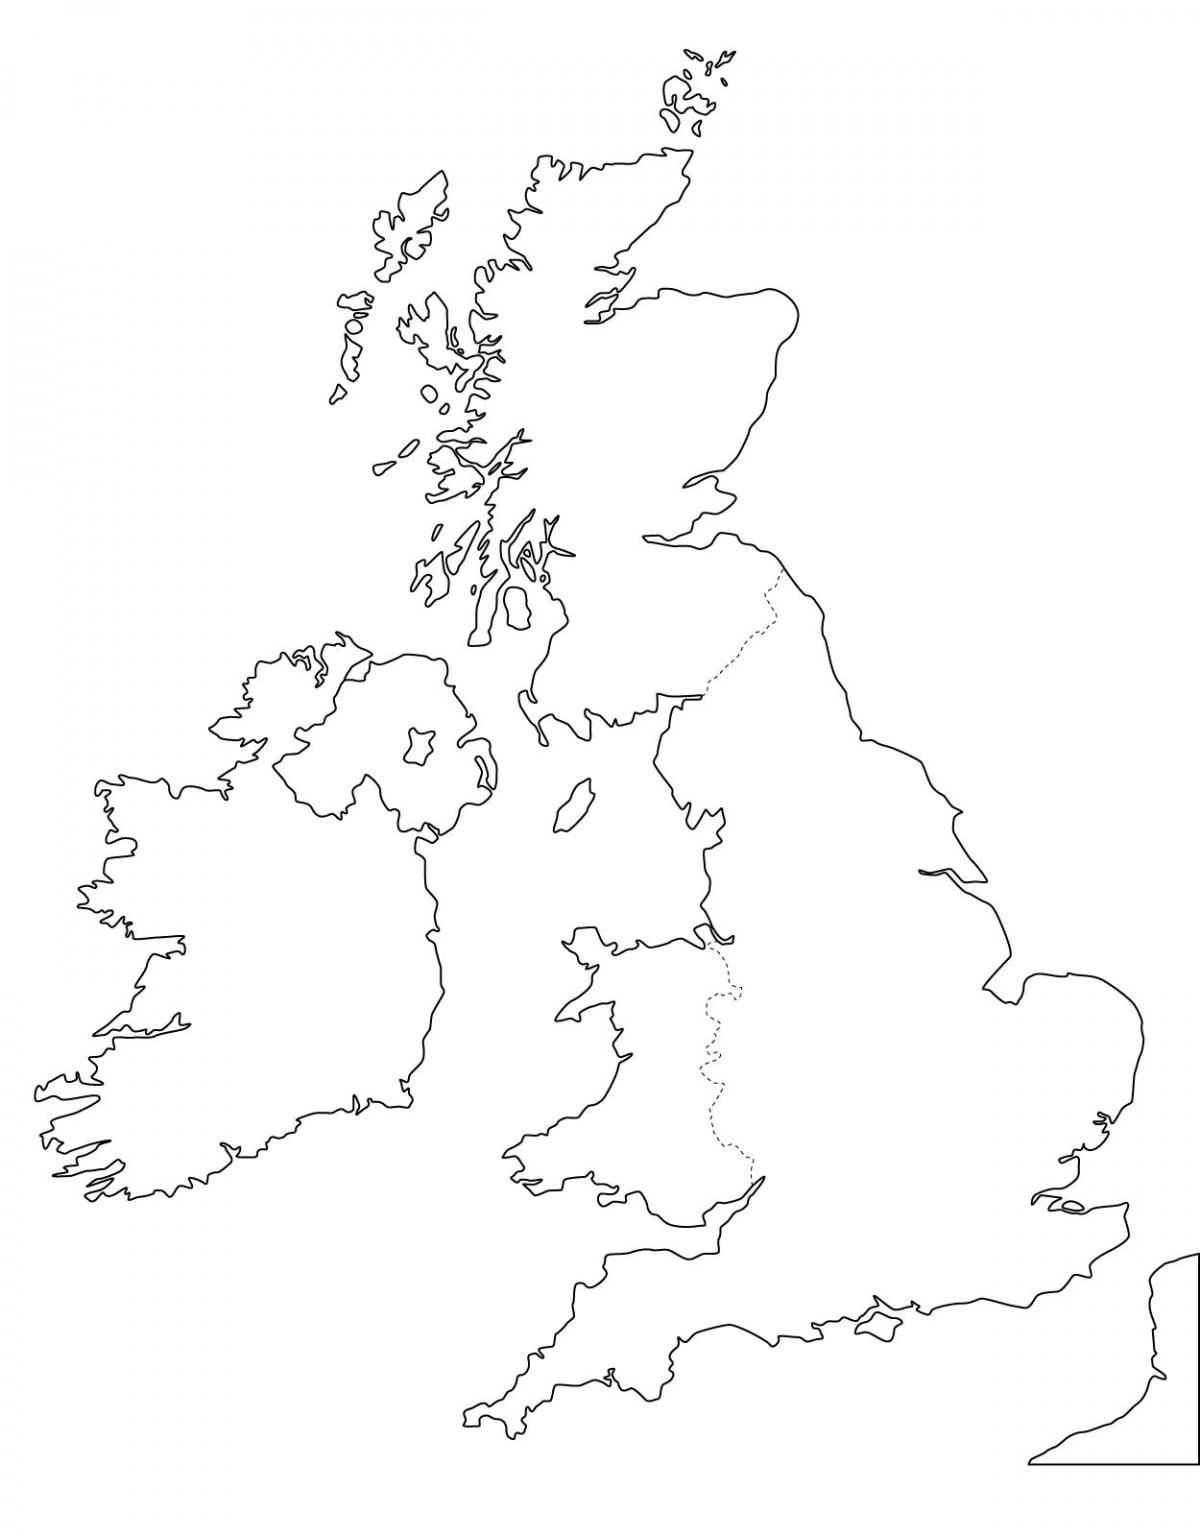 خريطة المملكة المتحدة (المملكة المتحدة) فارغة